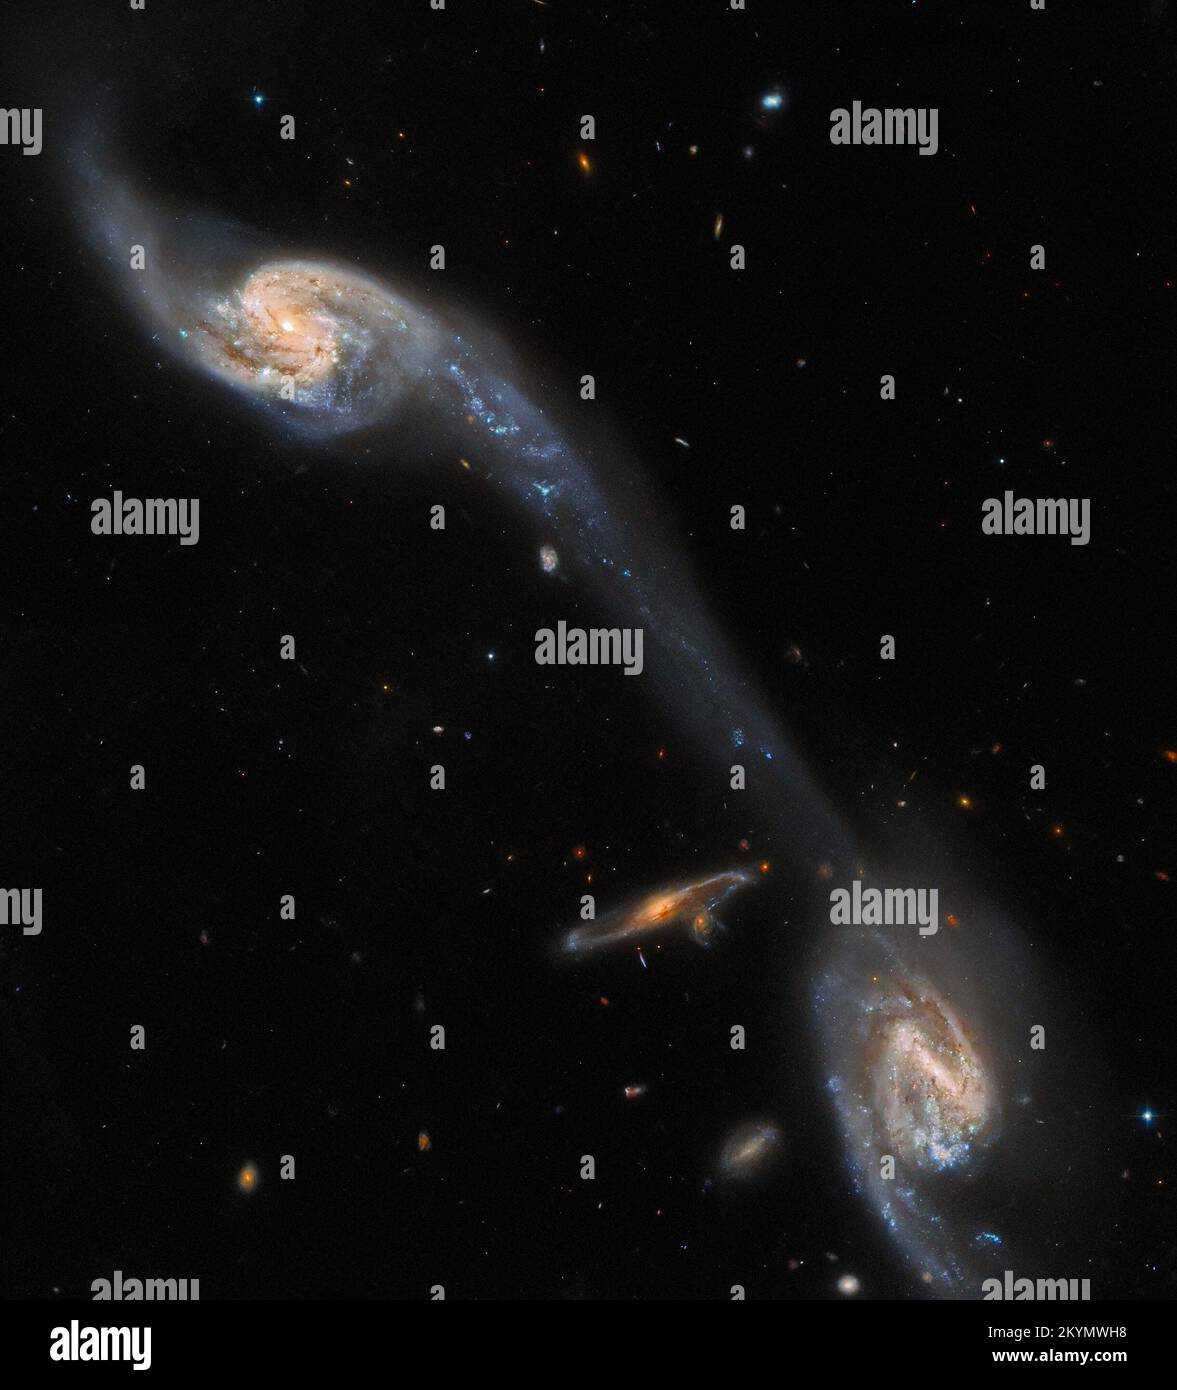 Dieses Bild des NASA/ESA Hubble Space Telescope zeigt zwei der Galaxien im galaktischen Triplet Arp 248 – auch bekannt als Wild's Triplet – das in der Konstellation Jungfrau etwa 200 Millionen Lichtjahre von der Erde entfernt liegt. Die beiden großen spiralförmigen Galaxien, die in diesem Bild sichtbar sind – die eine kleinere, nicht verwandte Hintergrund-Spiralgalaxie flankieren – scheinen durch eine leuchtende Brücke miteinander verbunden zu sein. Dieser verlängerte Strom von Sternen und interstellarem Staub ist bekannt als Gezeitenschwanz und wurde durch die gegenseitige Anziehung der beiden Vordergrundgalaxien gebildet. Diese Beobachtung stammt aus einem Projekt, das sich durchsetzt Stockfoto